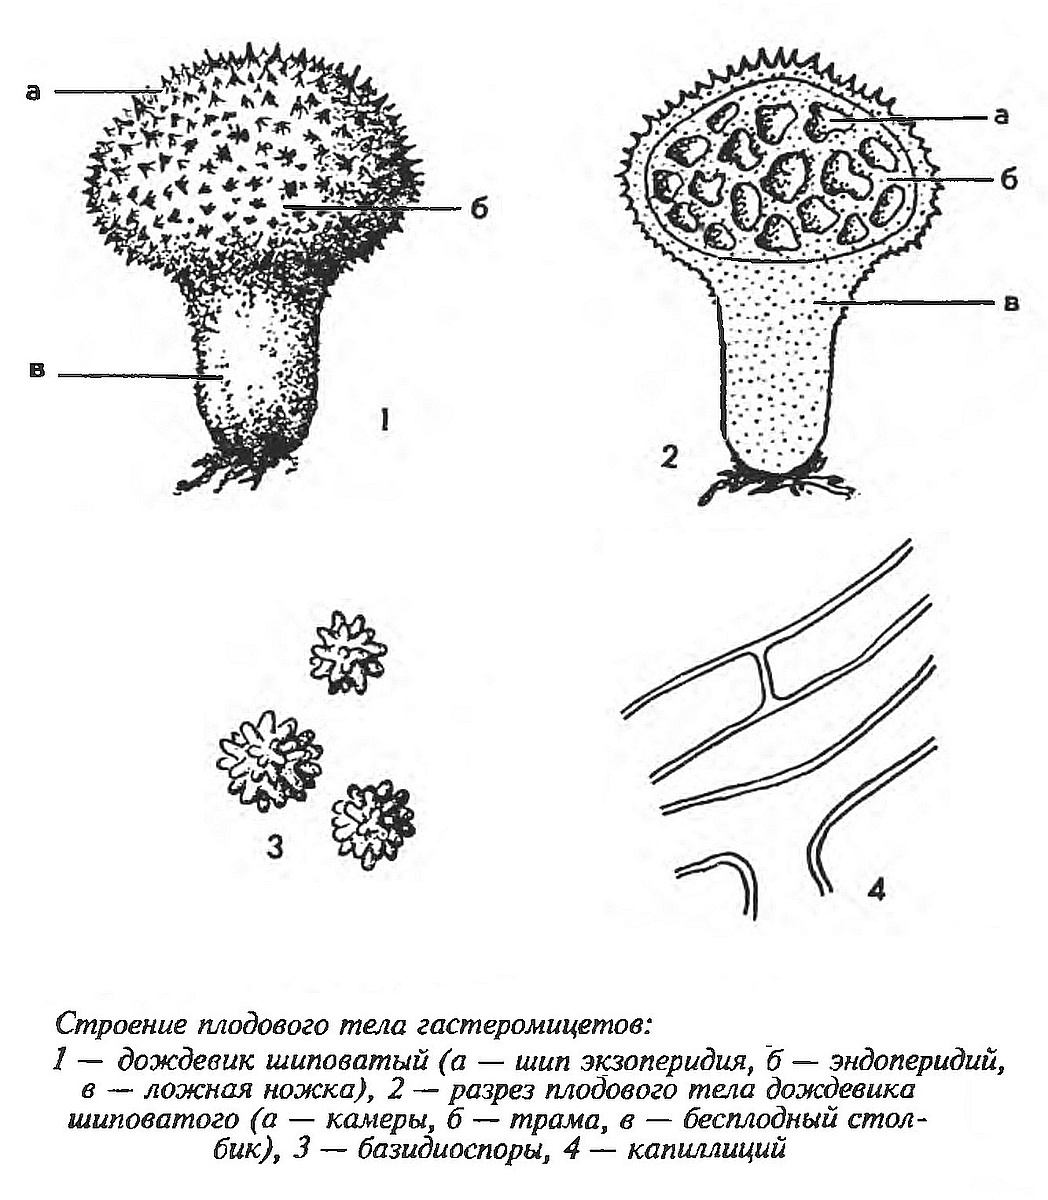 Дождевик съедобный (Lycoperdon perlatum) 2